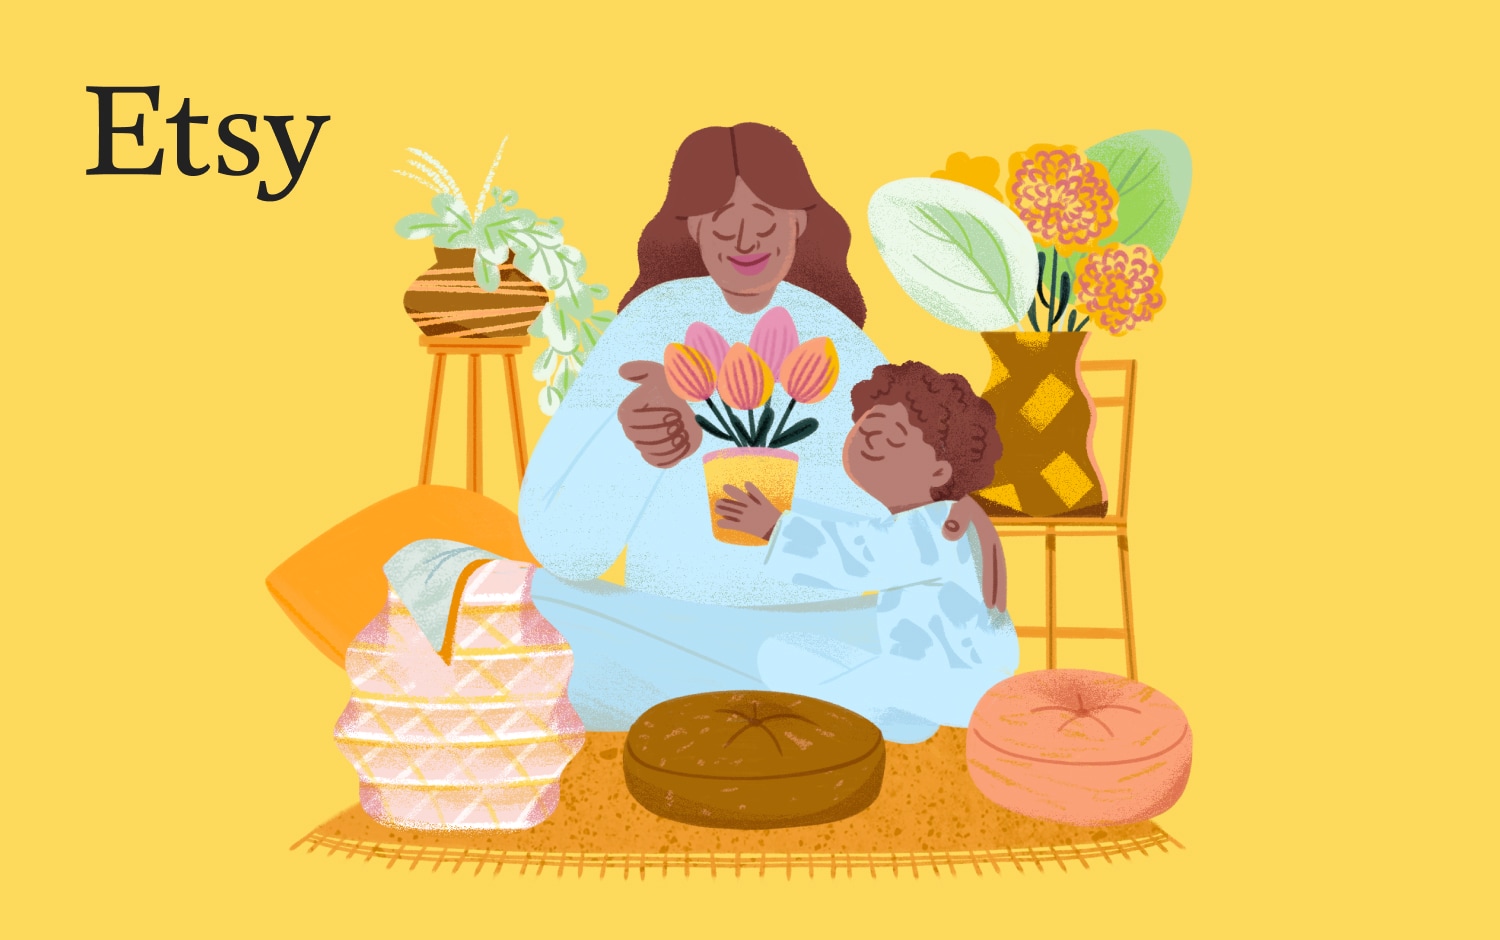 Illustratie van een vrouw en kind in een knusse ruimte. Het kind geeft de vrouw een tulp in een bloempot. Om hen heen staan kamerplanten en twee krukken. De achtergrond is geel en er staat een zwart Etsy-logo in de linkerbovenhoek